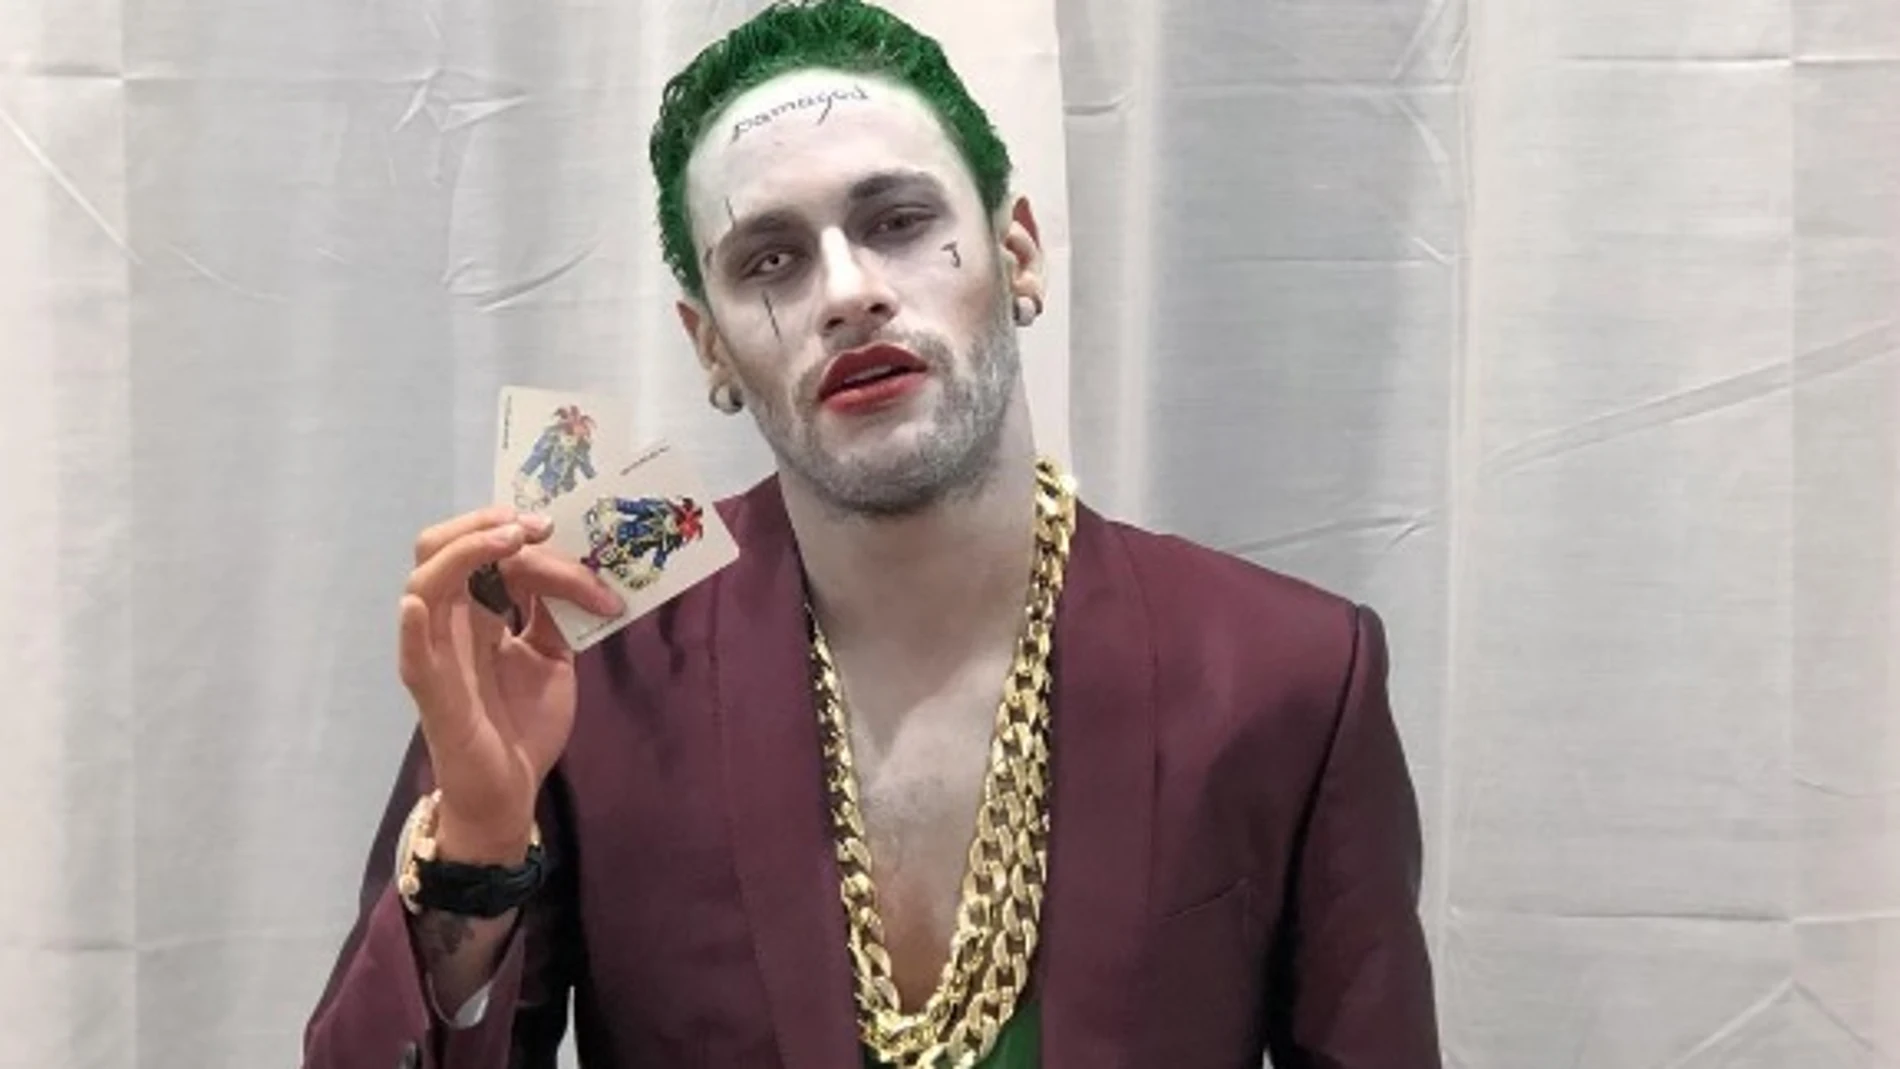 Neymar, disfrazado de 'Joker' en la noche de Halloween